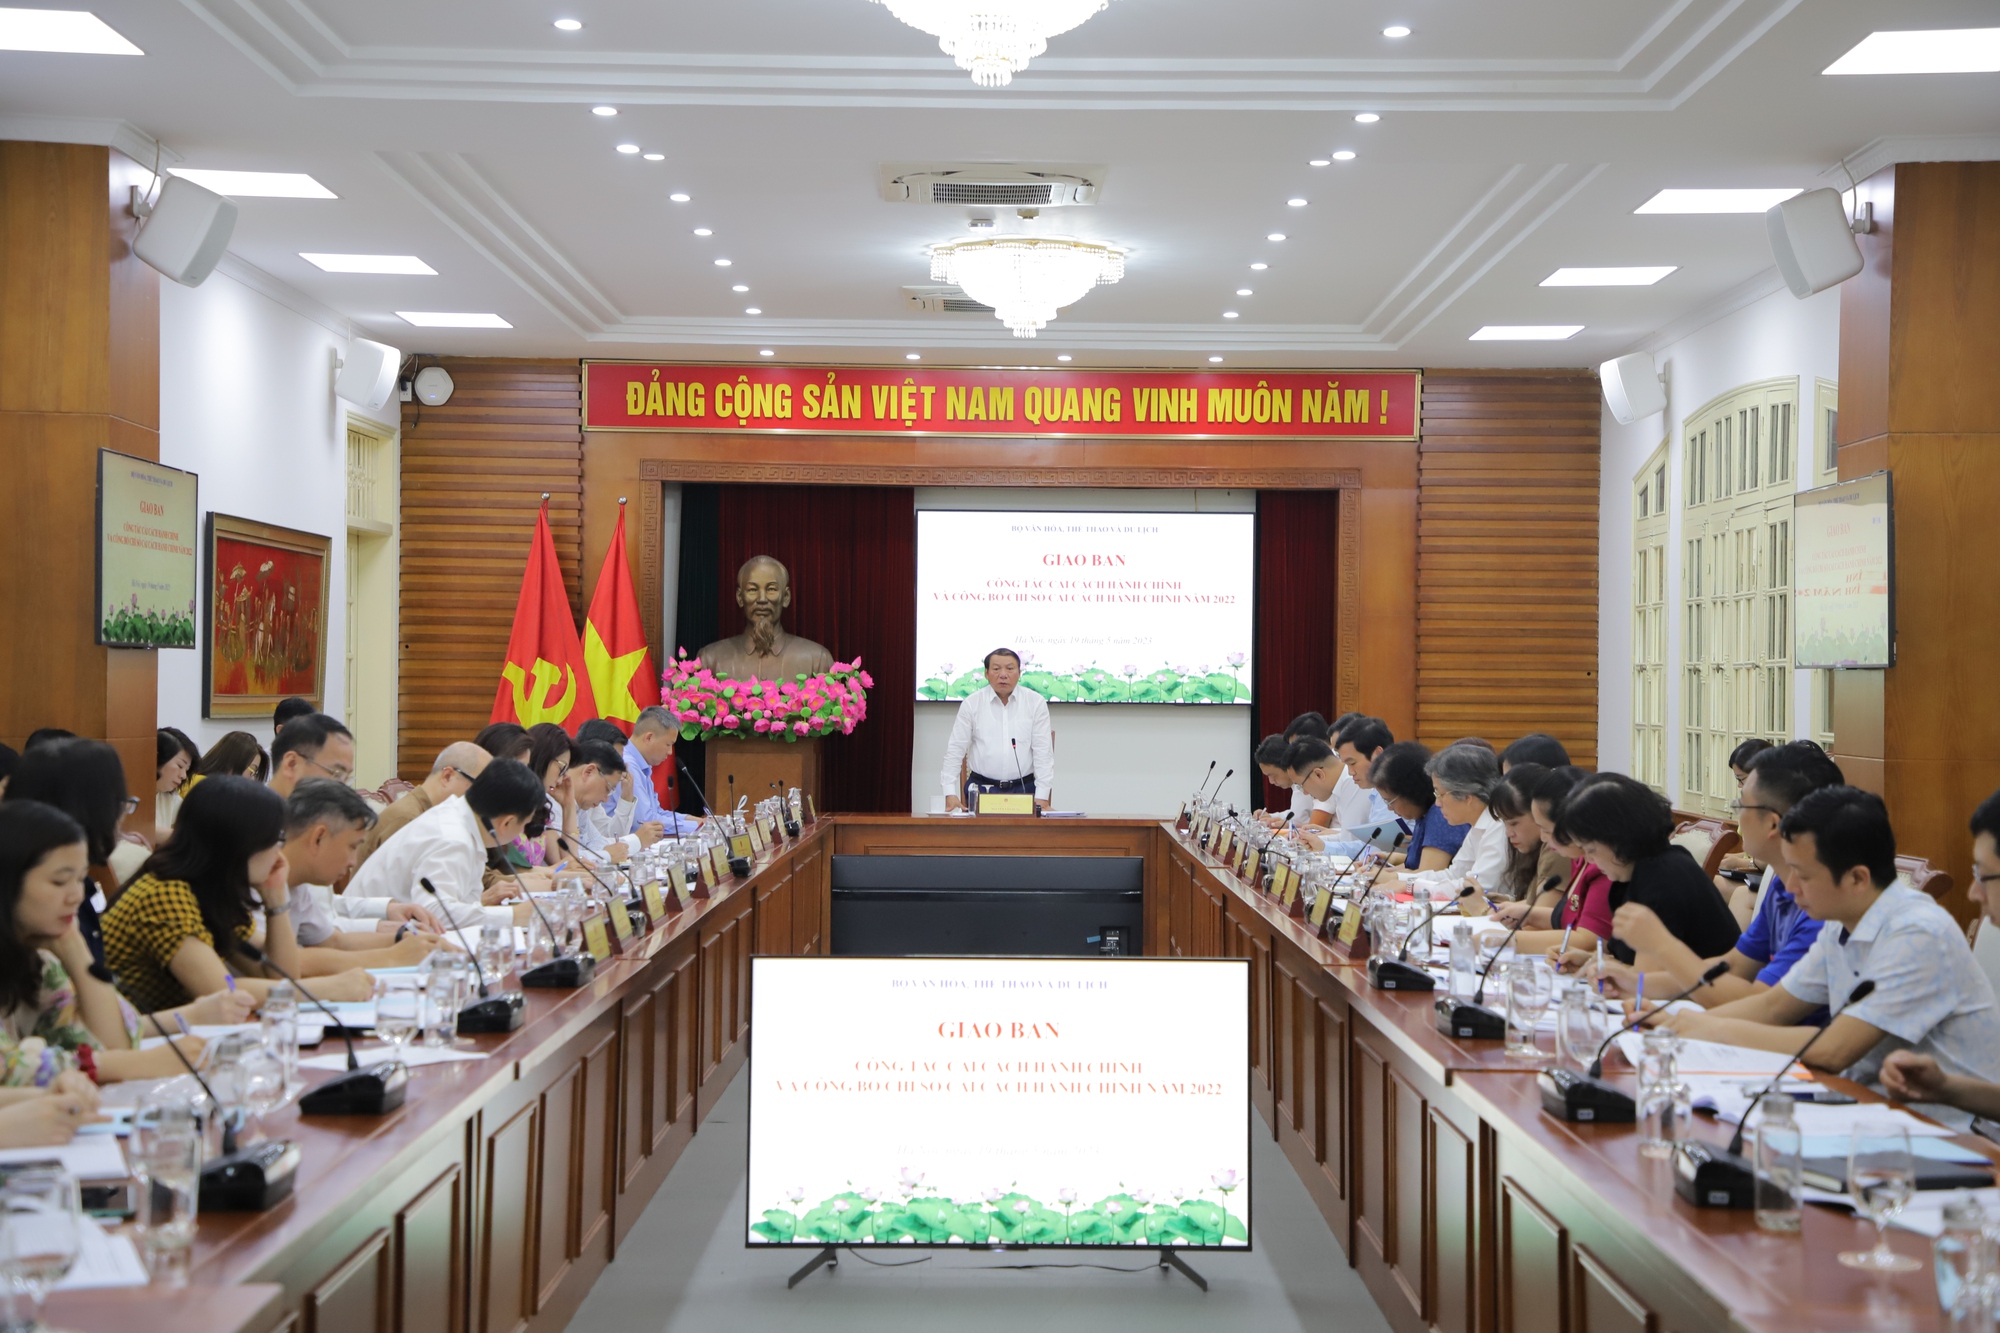 Bộ trưởng Nguyễn Văn Hùng: Chọn khâu đột phá, làm một cách căn cơ, bài bản để tạo ra "cú hích" trong cải cách hành chính